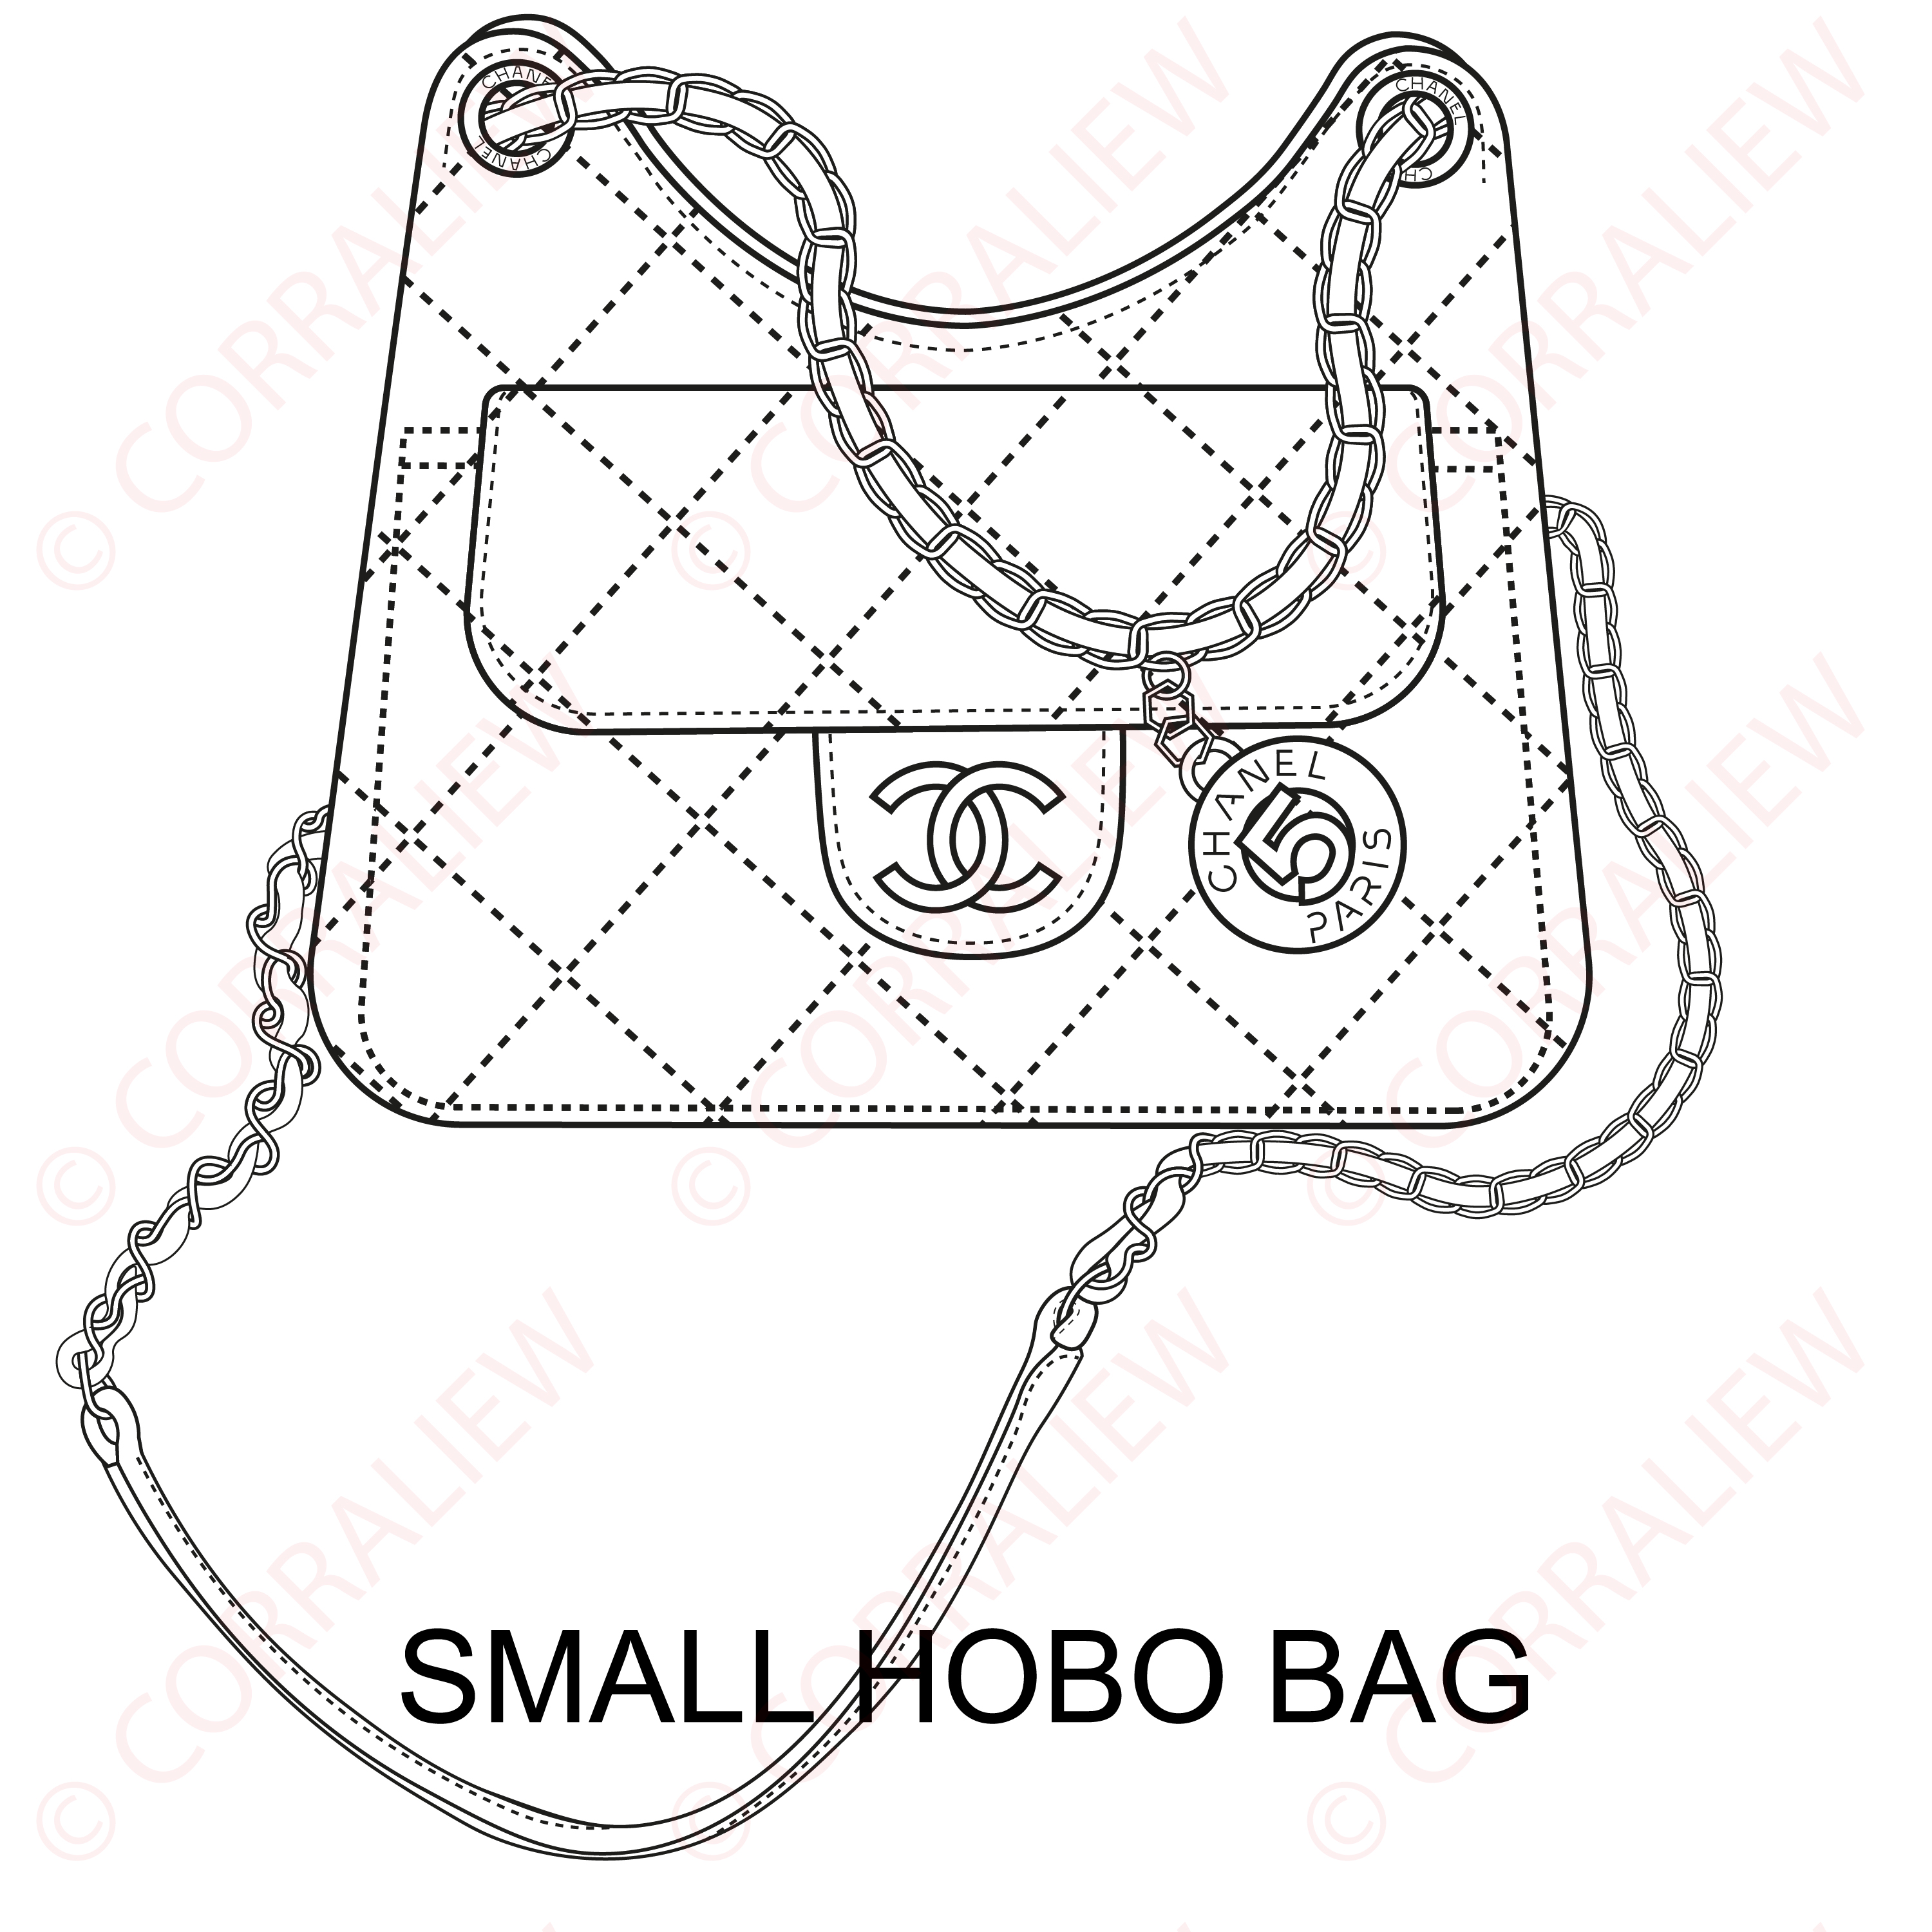 Chanel - SMALL HOBO BAG Illustration